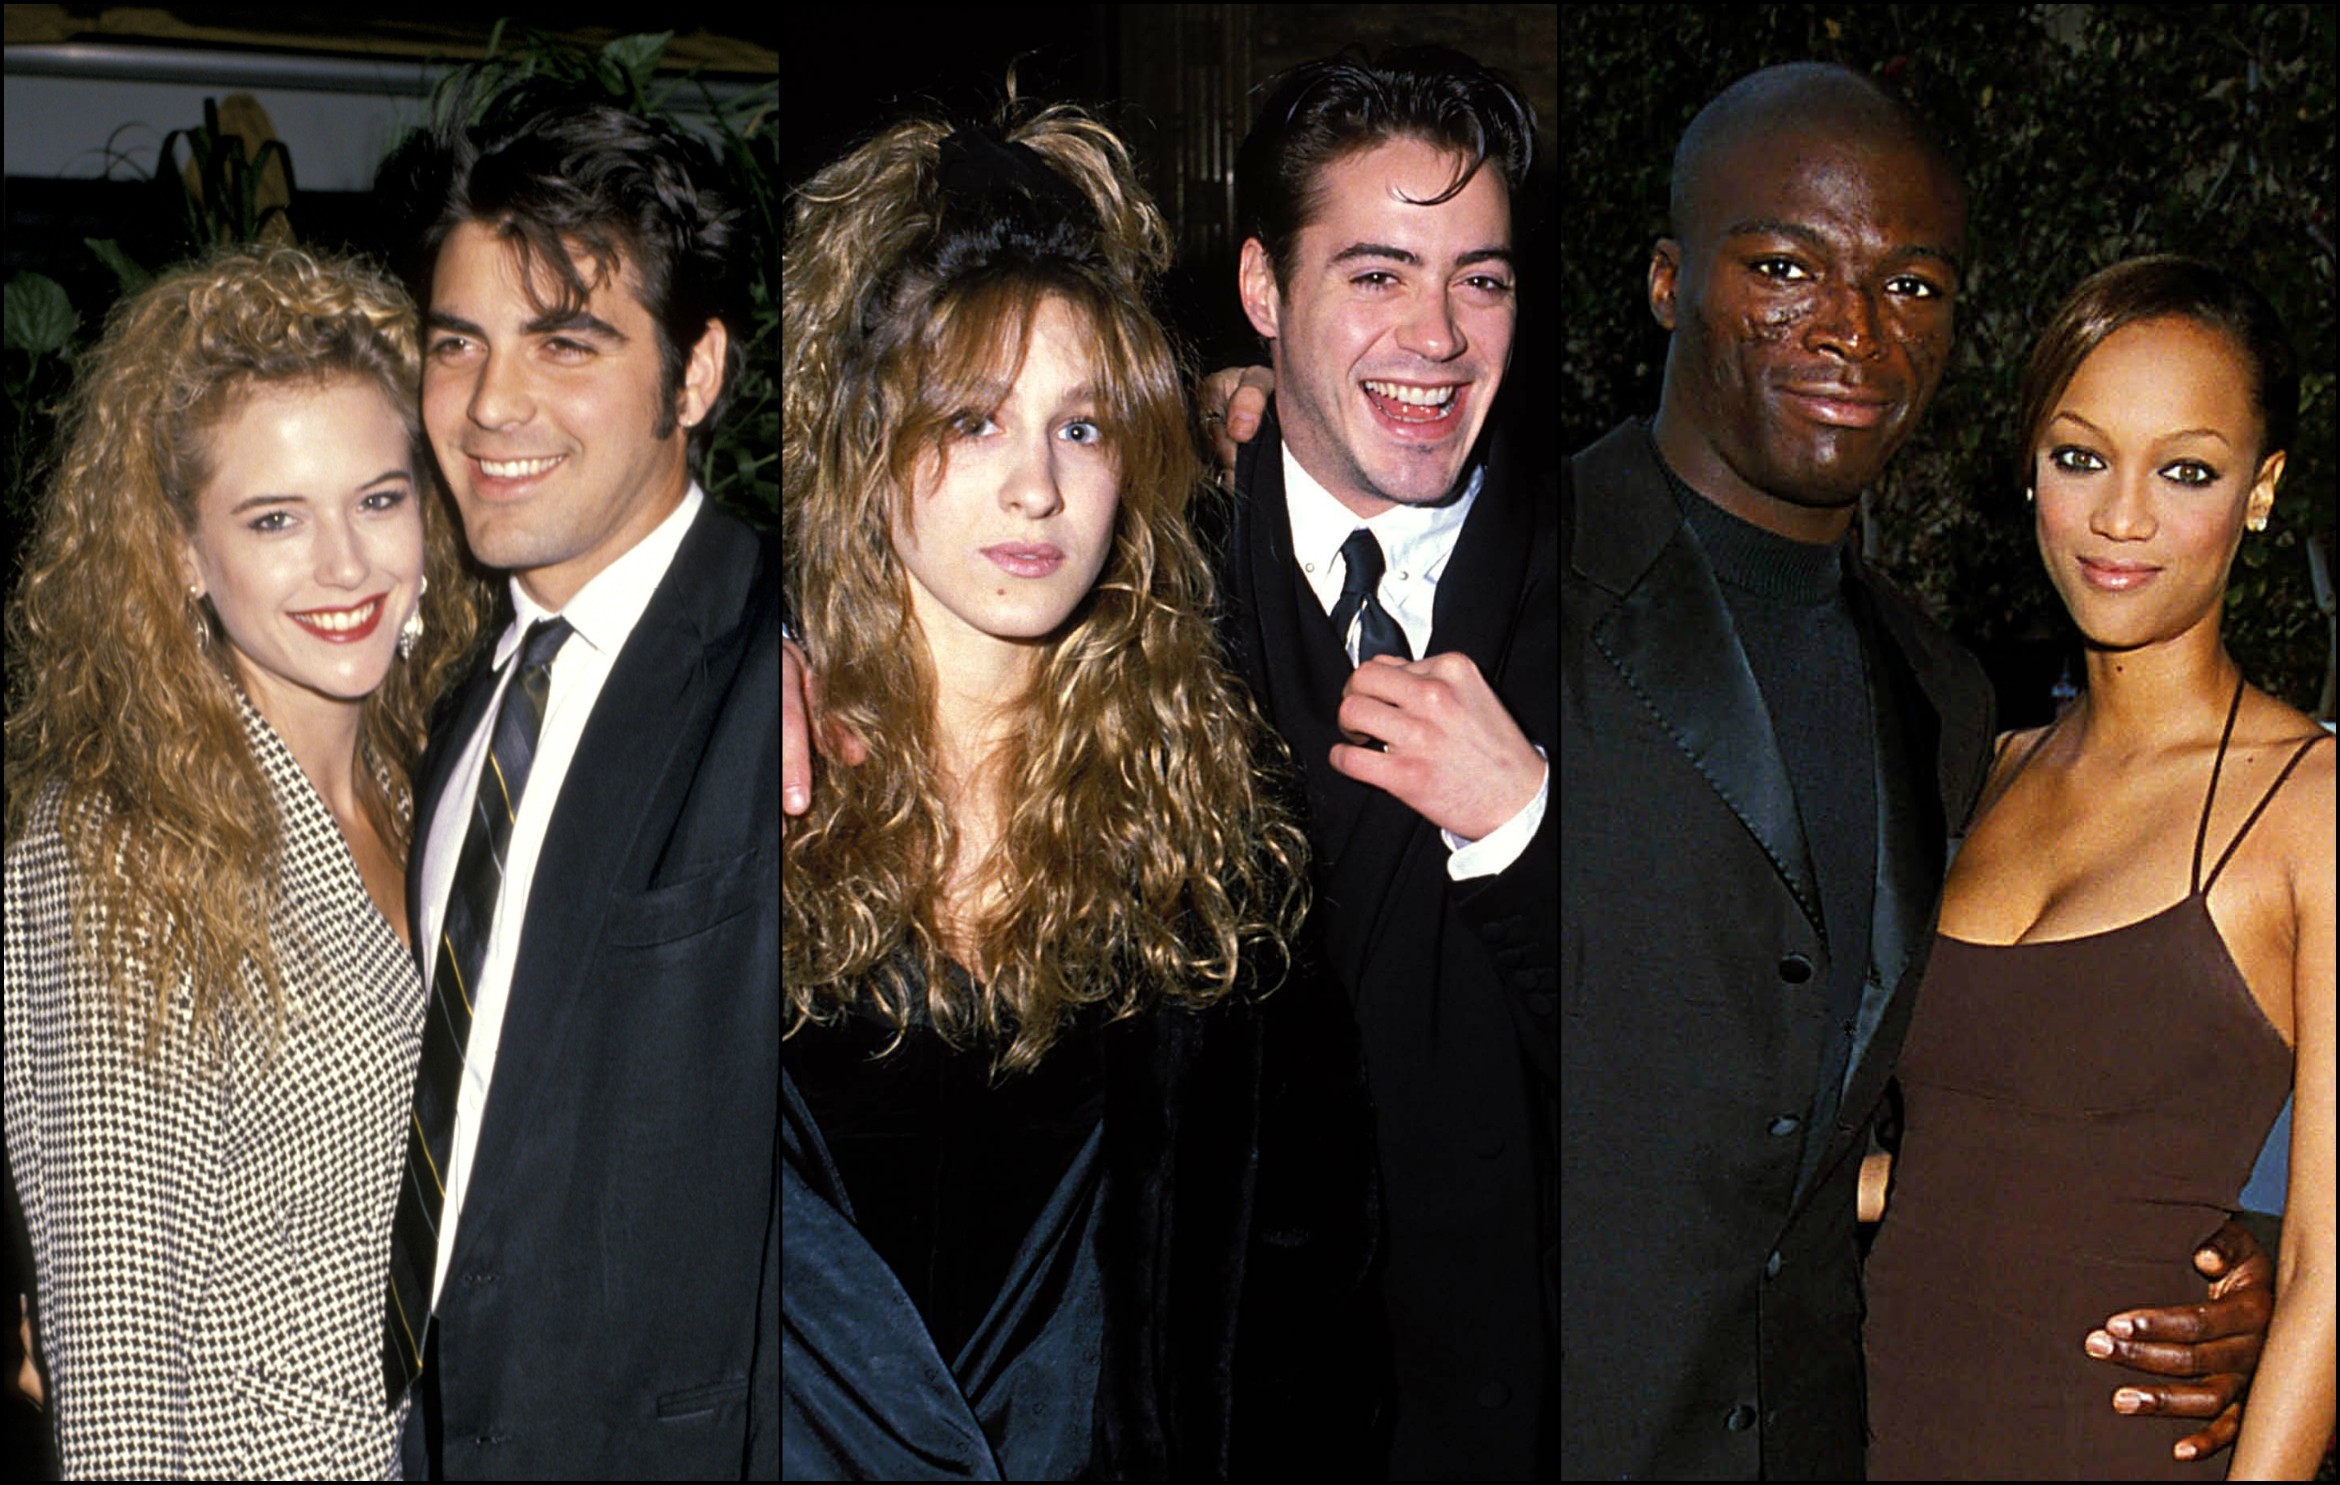 Kelly Preston com George Clooney, Sarah Jessica Parker com Robert Downey Jr., Seal com Tyra Banks... Fala sério: você sabia que esse pessoal já tinha se 